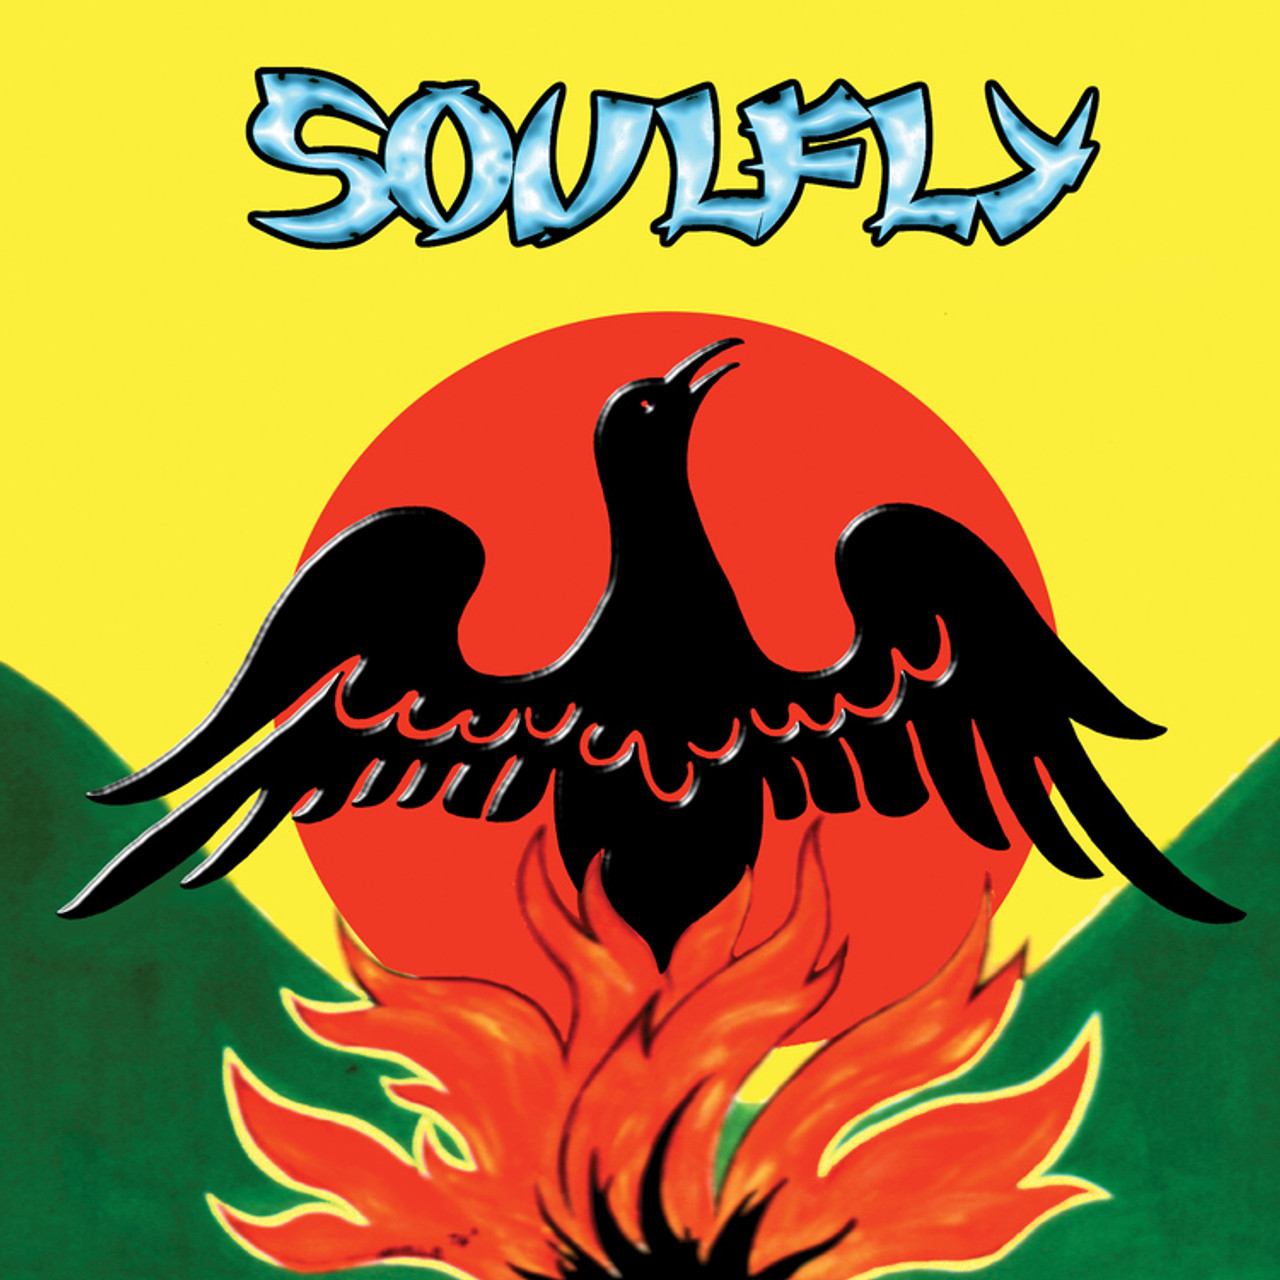 Soulfly - Primitive (180g Vinyl LP)